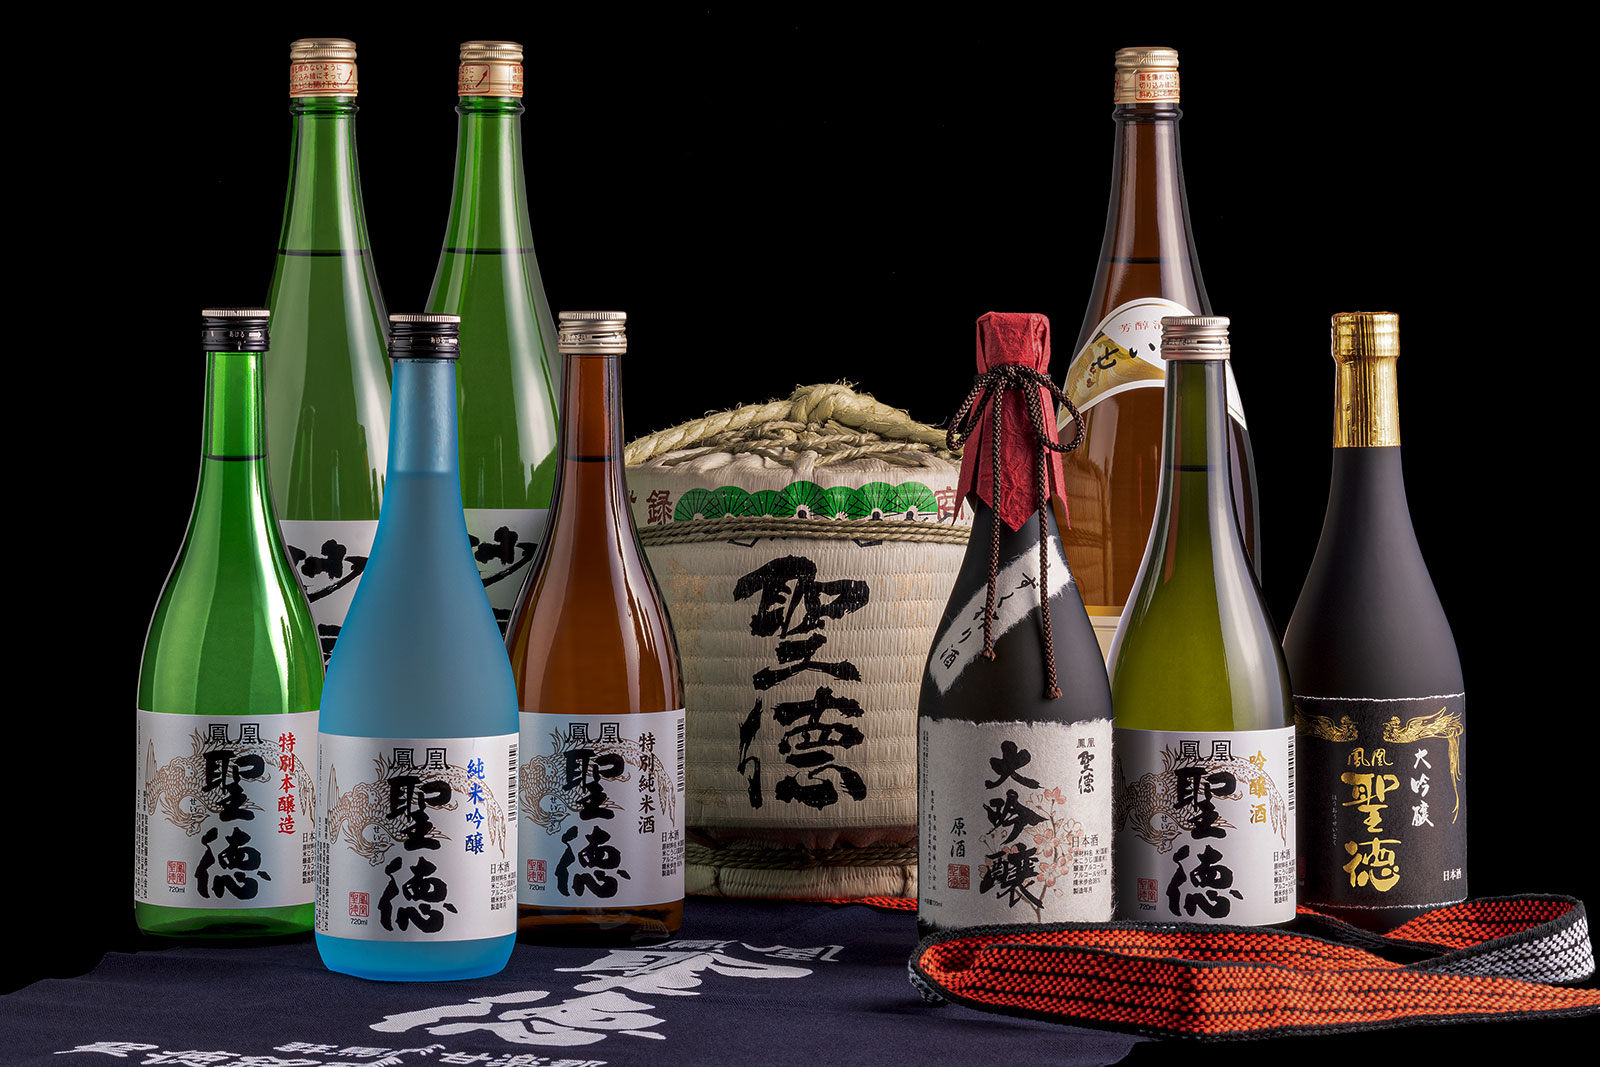 SEITOKU MEIJO | Japanese sake brewery company